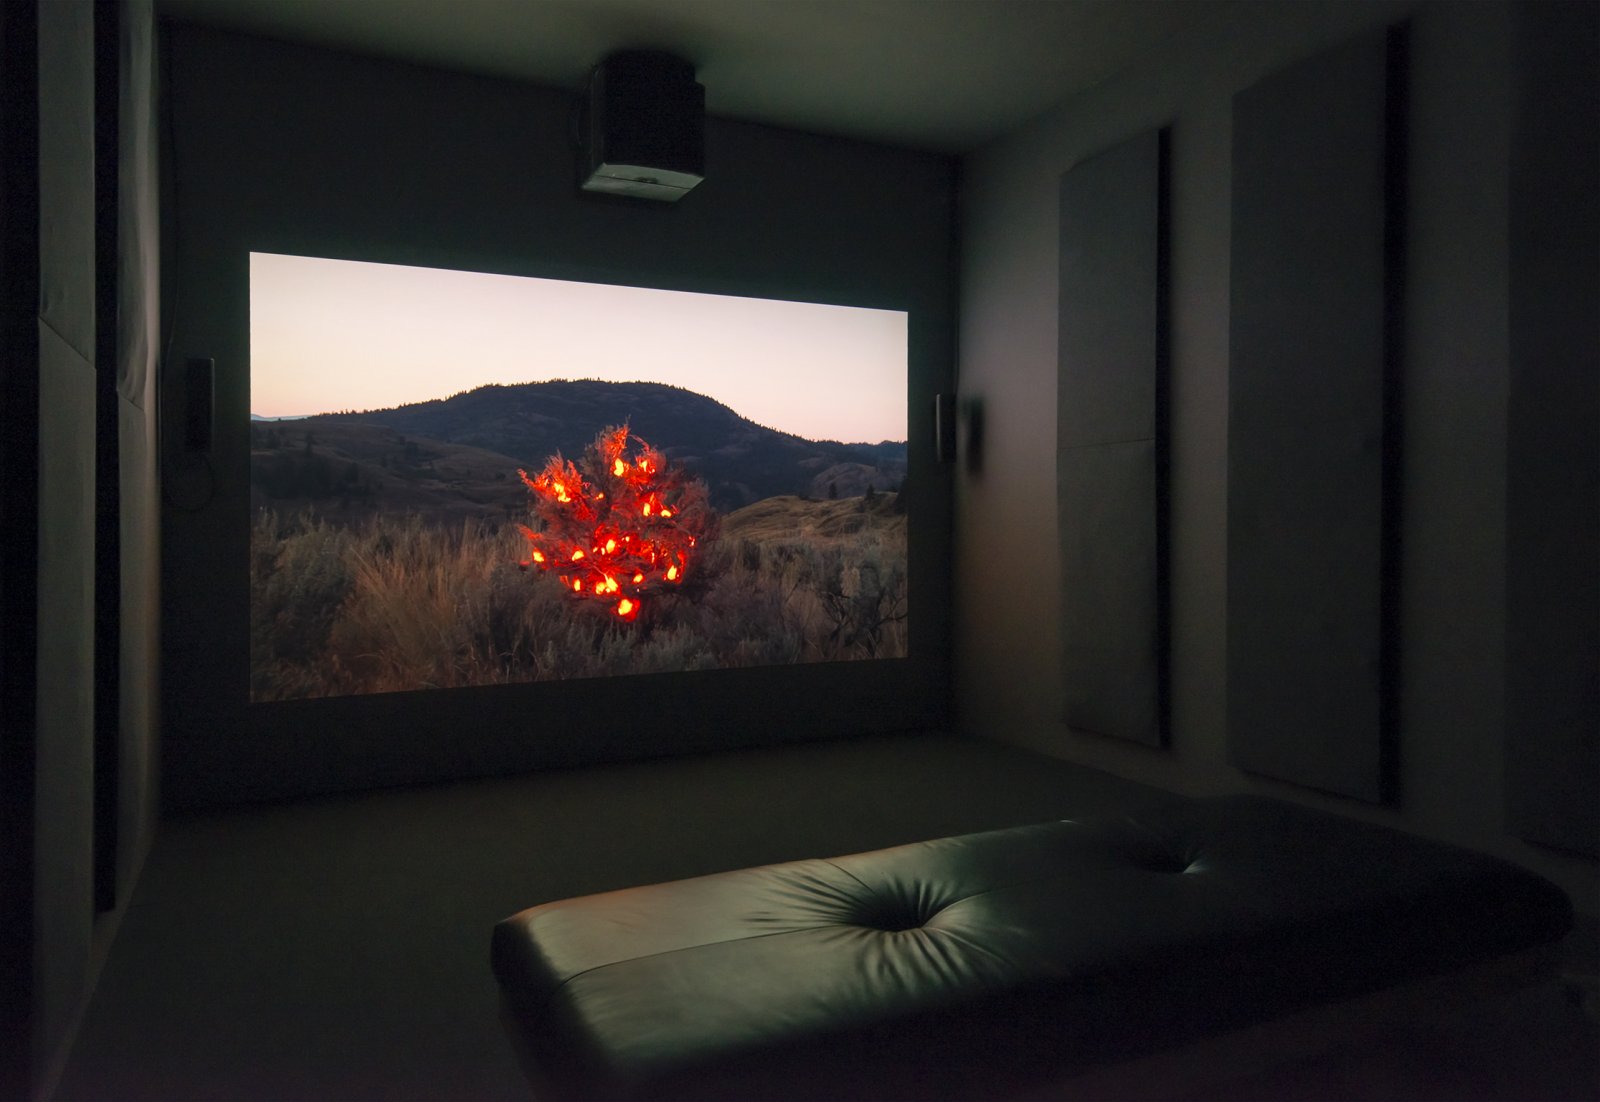 Kevin Schmidt, Burning Bush, 2005, HD video loop, 5 hours, 3 minutes. Installation view, The Commons, Kamloops Art Gallery, Kamloops, Canada, 2015